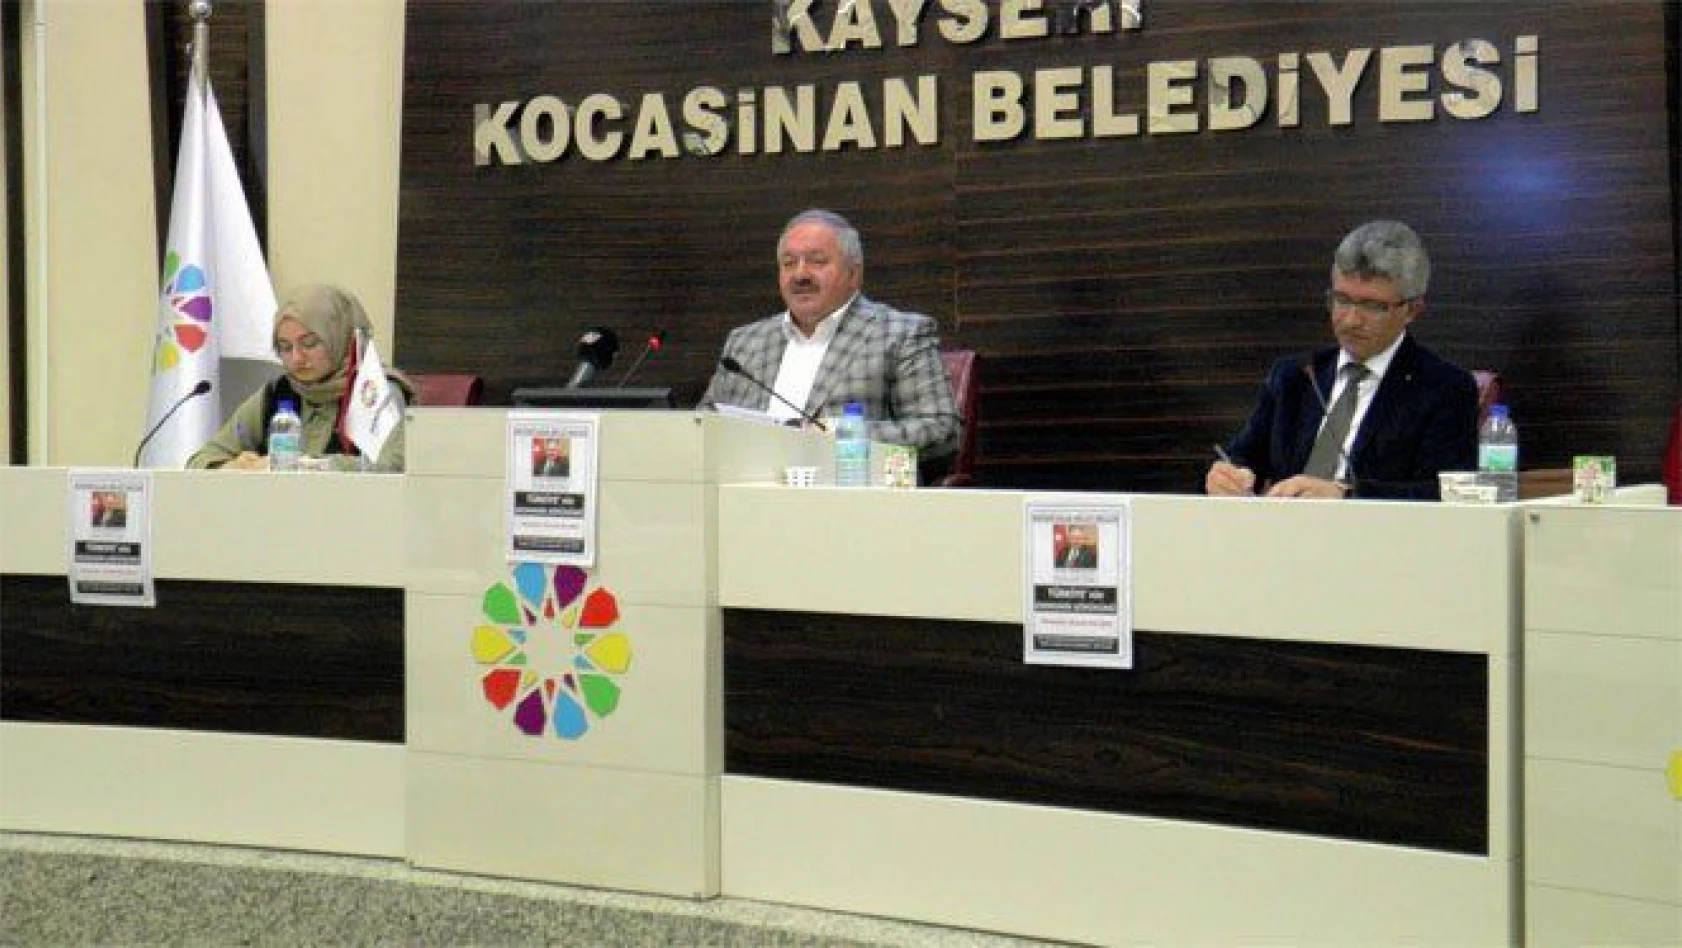 Nursaçan: 'Kayseri mobilyanın başkenti olmalıdır'